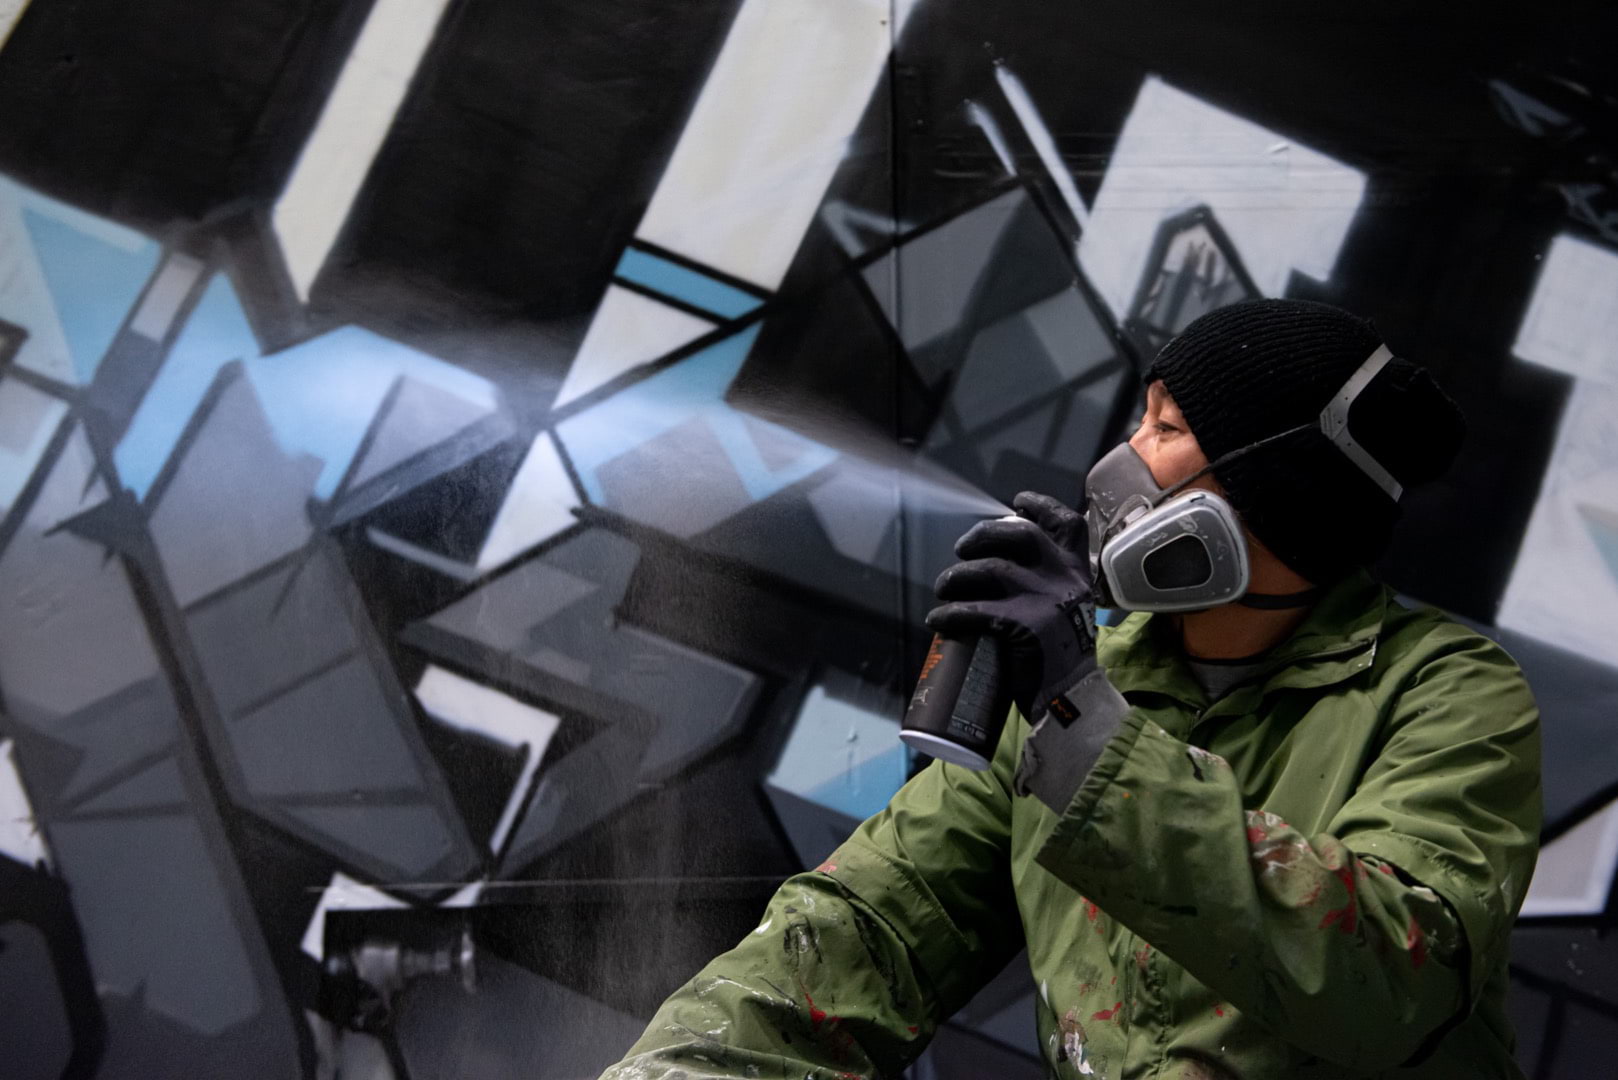 Graffitikonstnären DISEY skapar i ett mellanrum på Filmhuset - i regi av A house